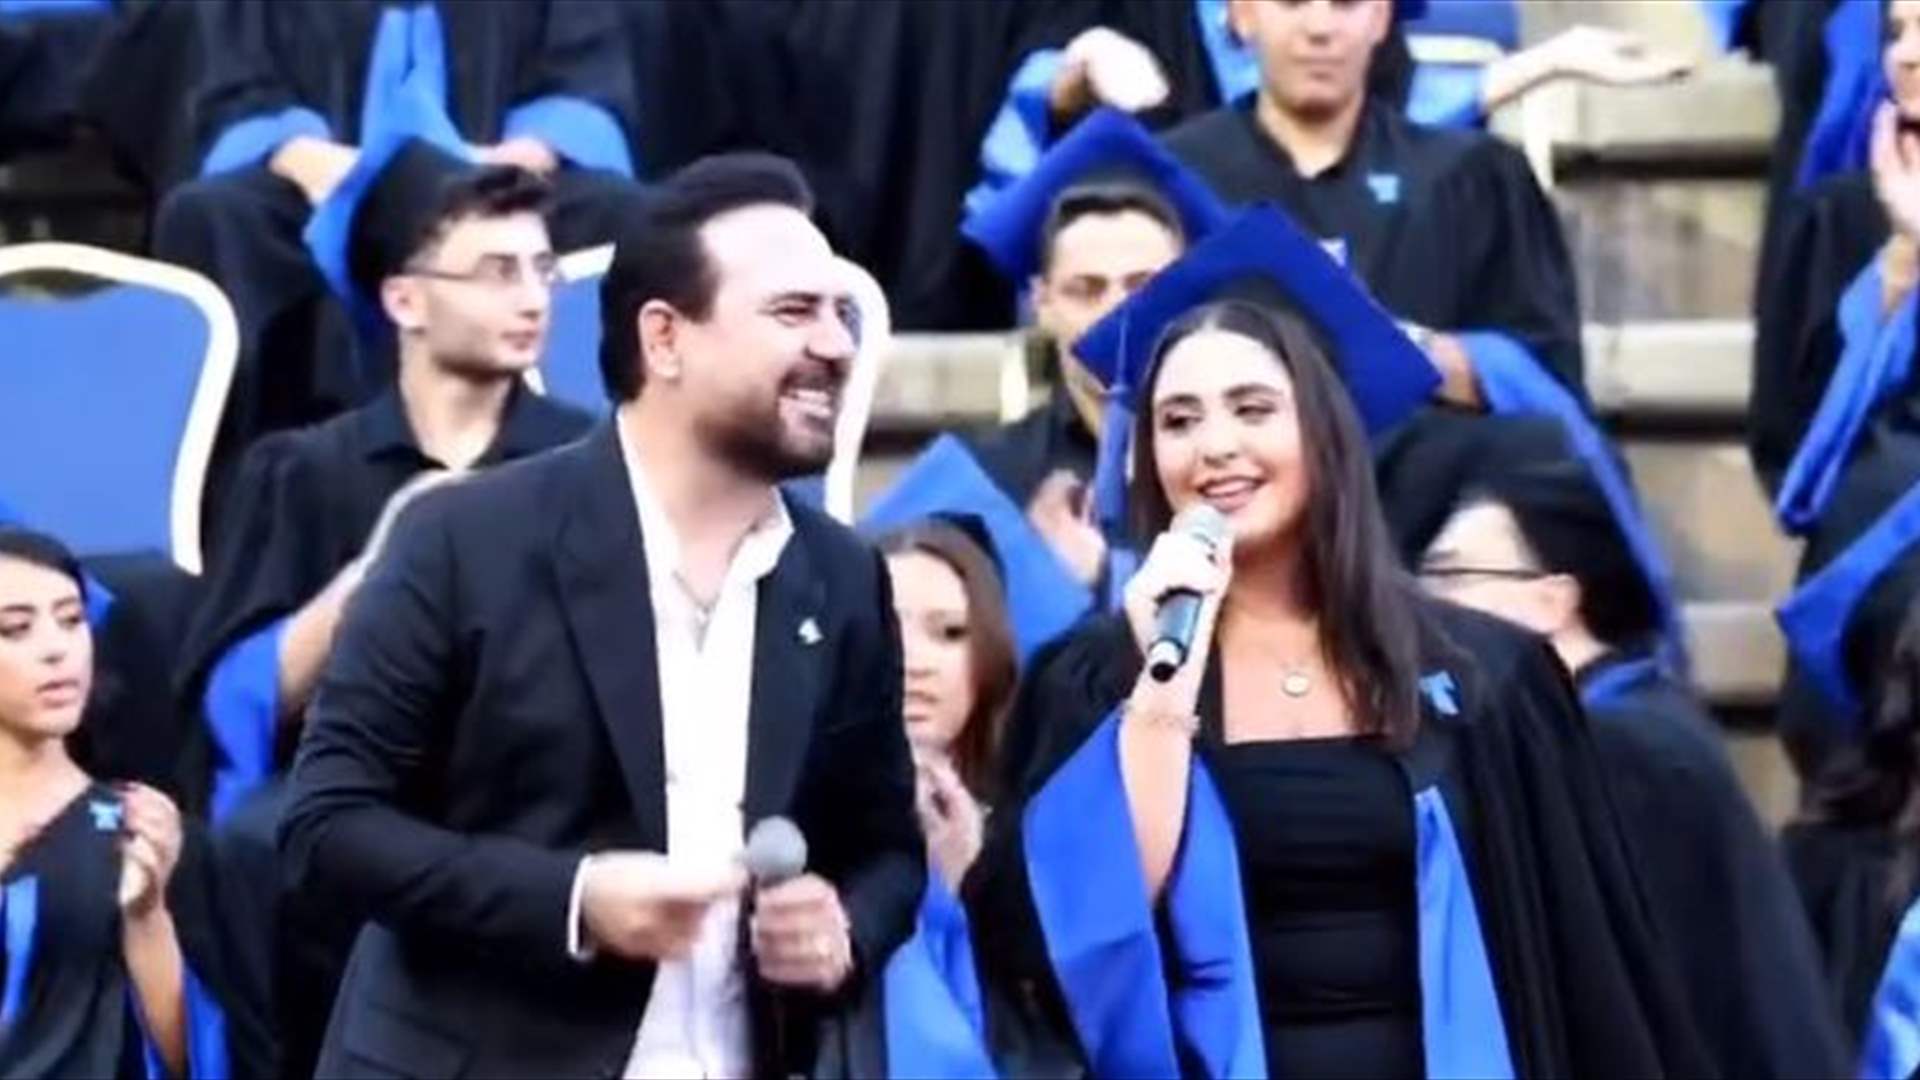 بطريقة مميزة ومؤثرة... وائل جسار يحتفل بتخرج ابنته! (فيديو)